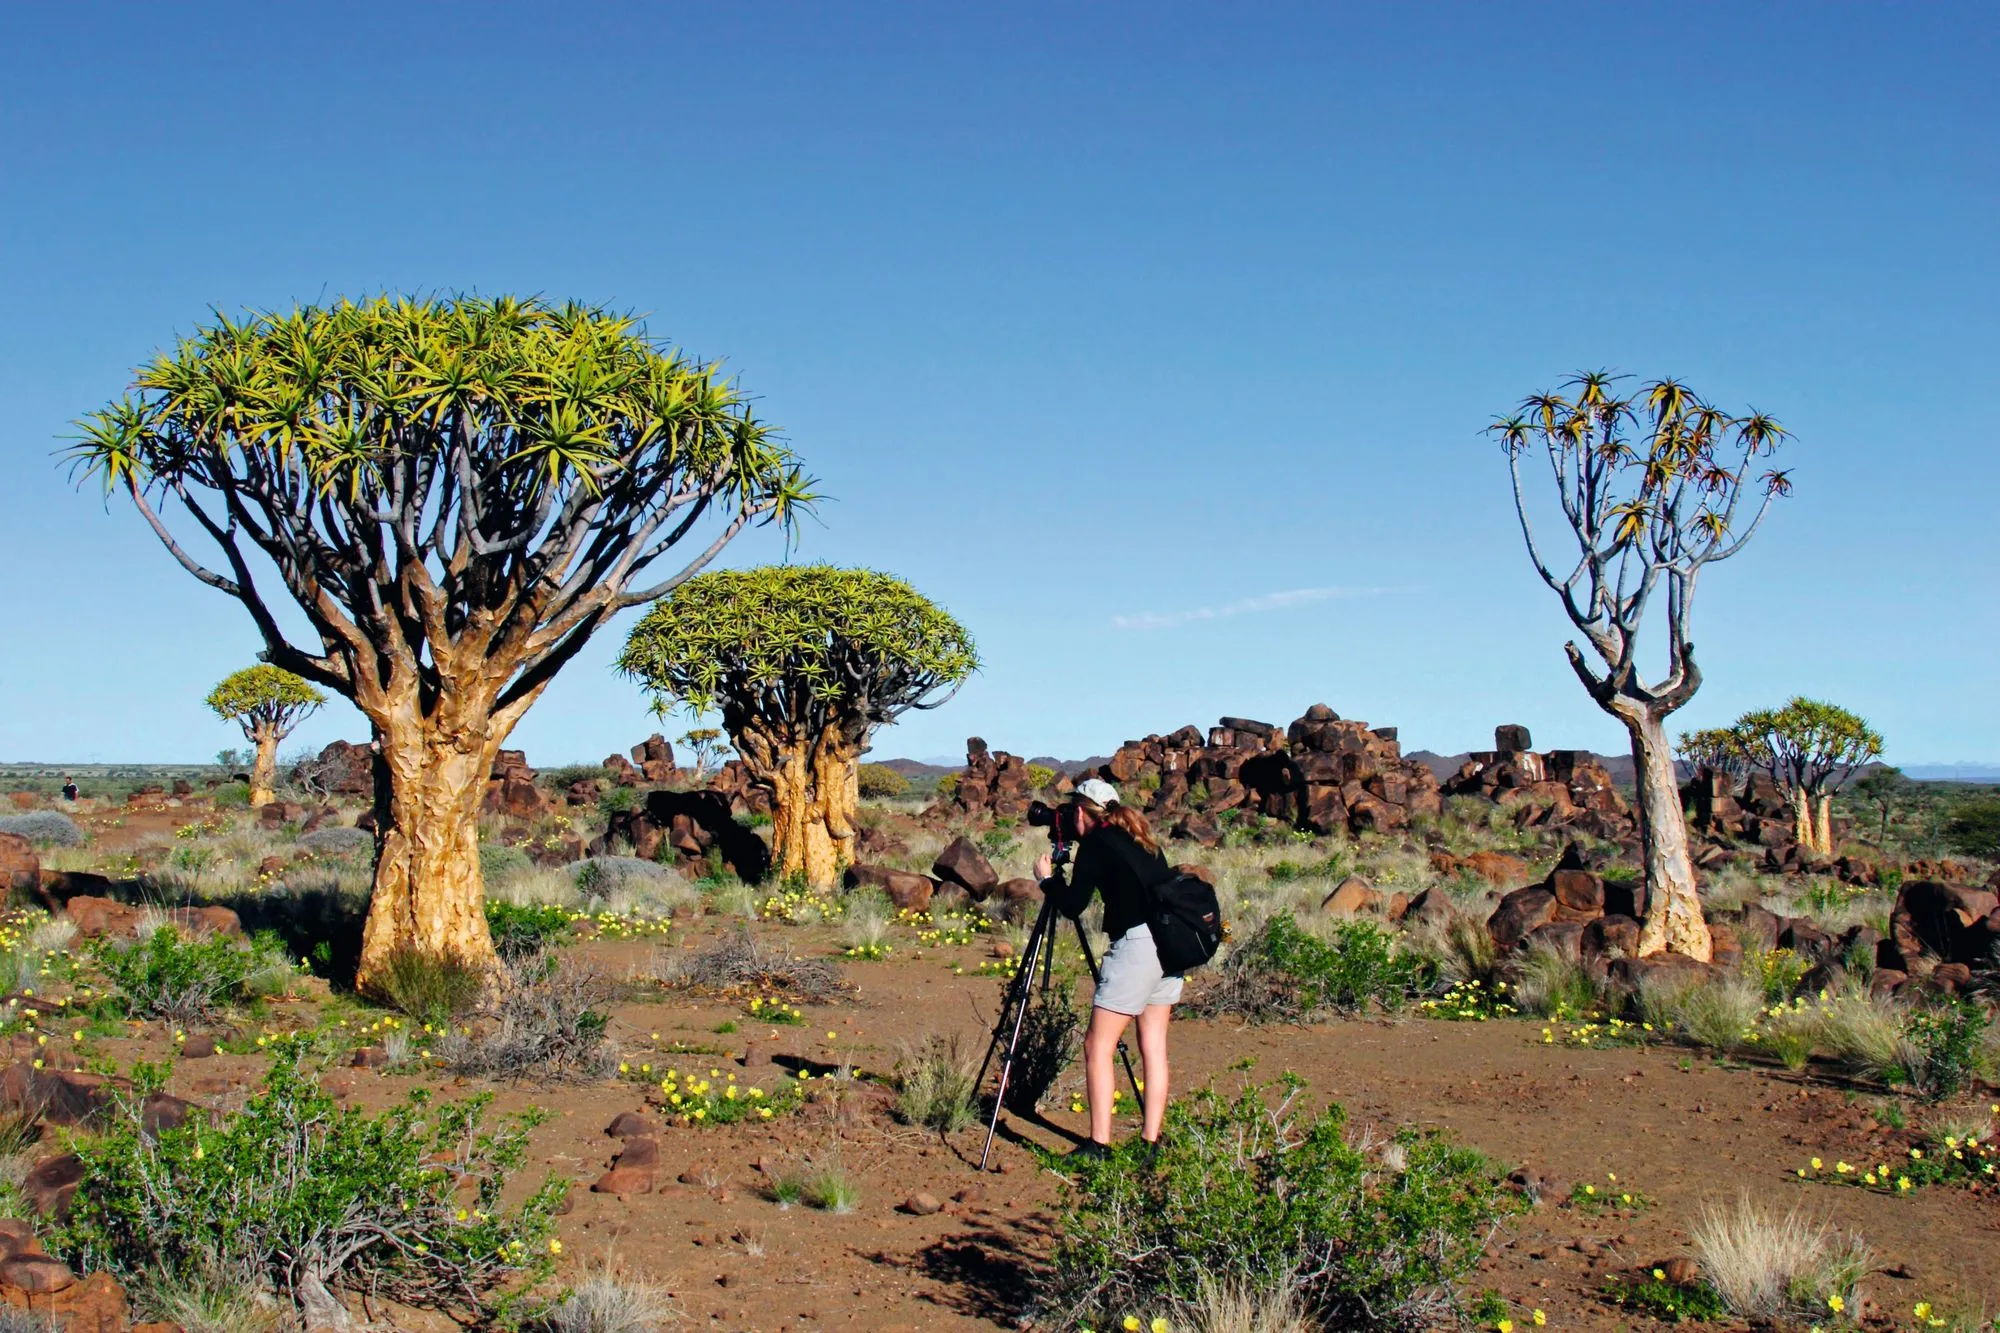 Le désert du
Namib, un espace
aride et fragilisé